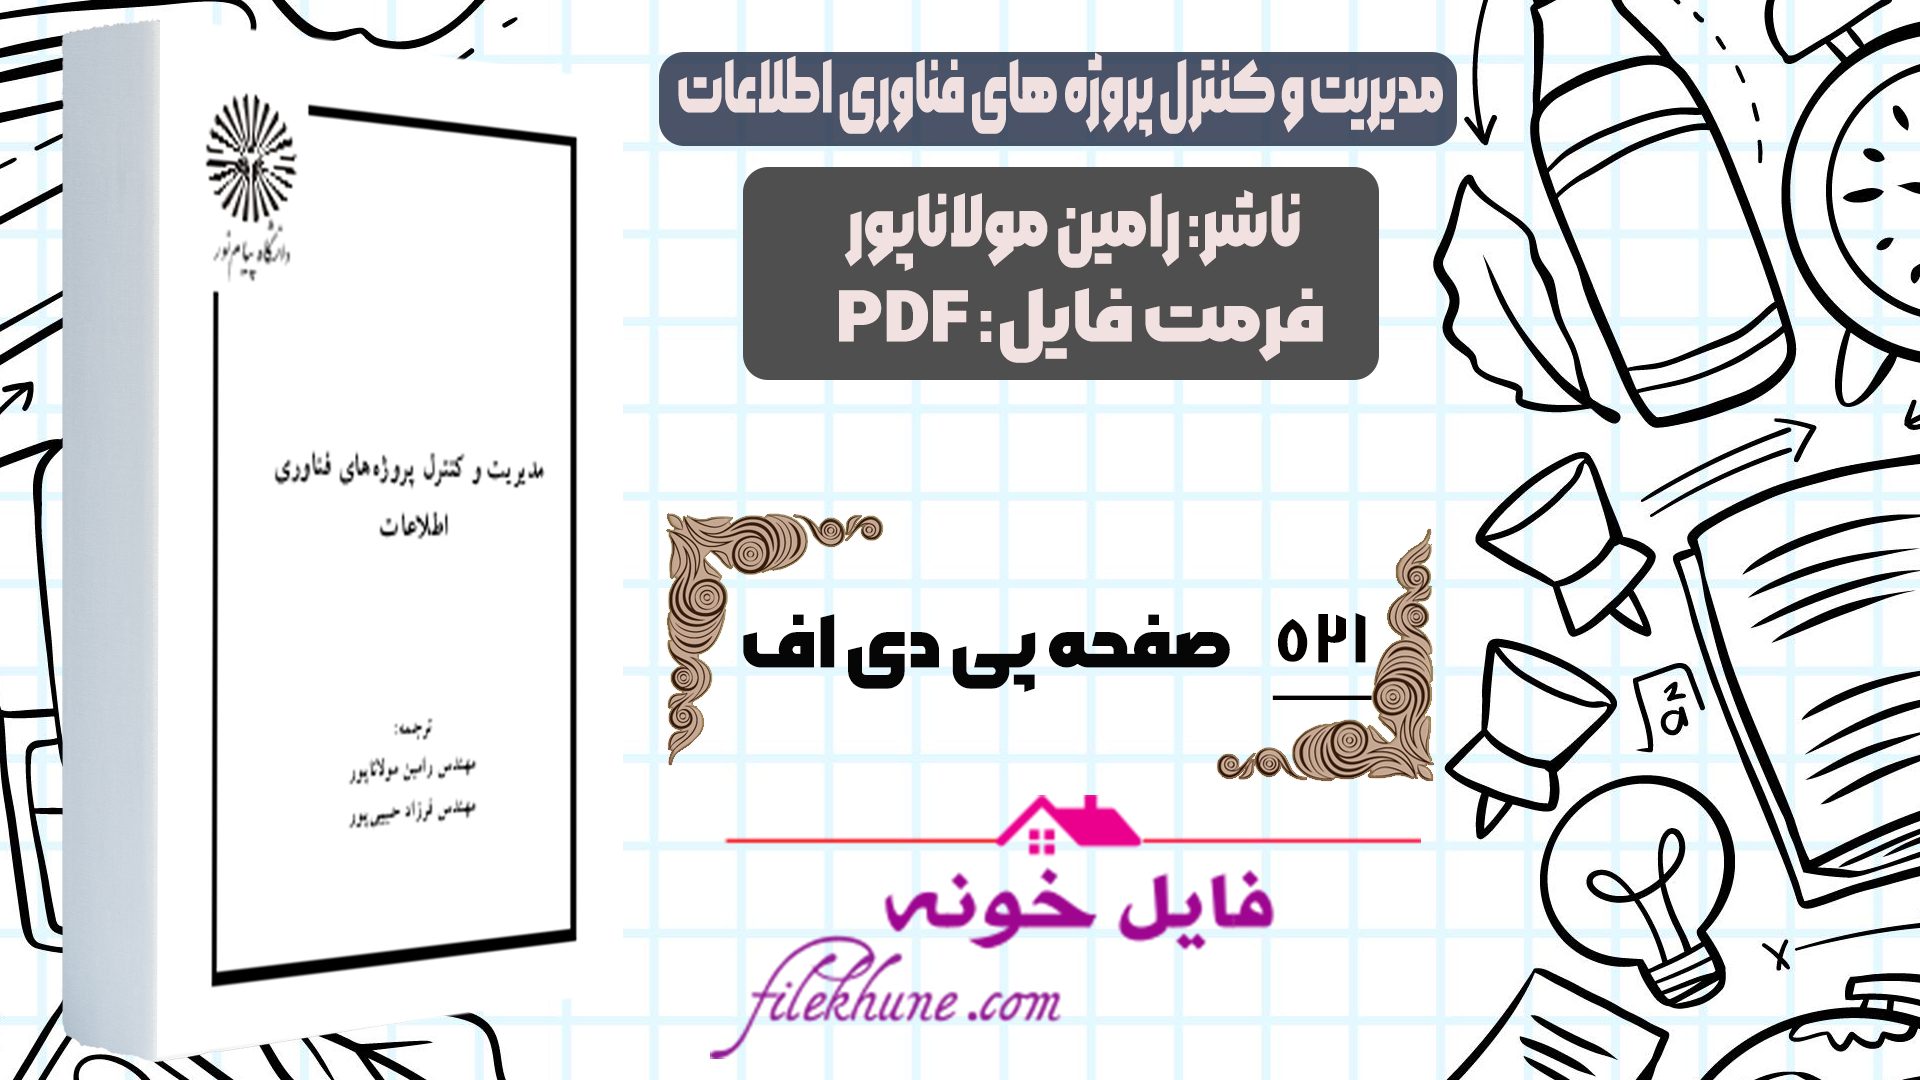 دانلود کتاب مدیریت و کنترل پروژه های فناوری اطلاعات رامین مولاناپور PDF